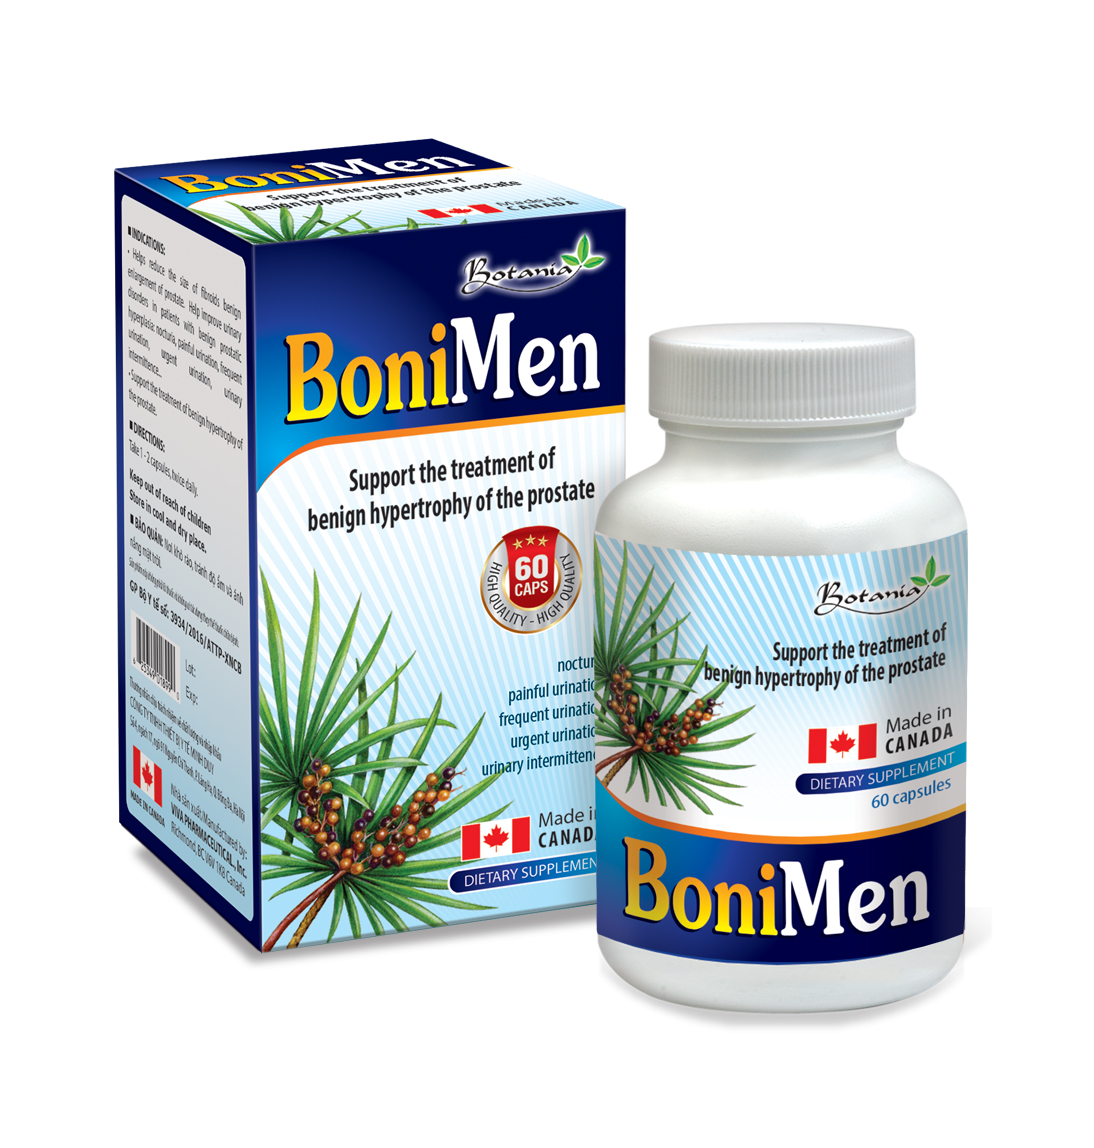 BoniMen - Giải pháp tối ưu giúp giảm và phòng ngừa biến chứng viêm đường tiết niệu